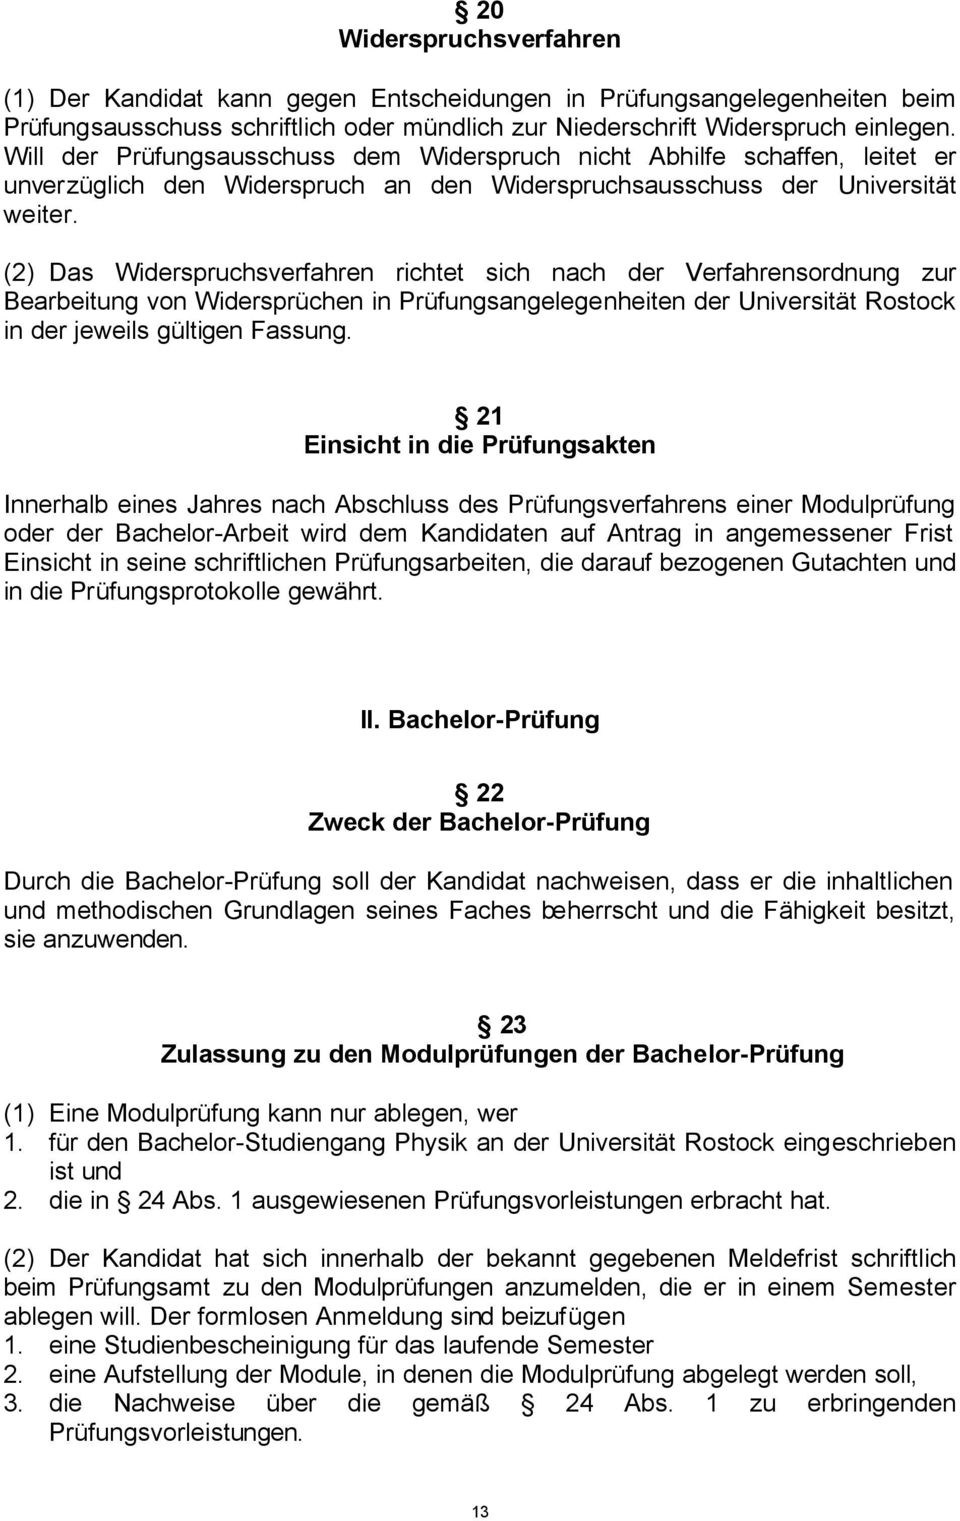 (2) Das Widerspruchsverfahren richtet sich nach der Verfahrensordnung zur Bearbeitung von Widersprüchen in Prüfungsangelegenheiten der Universität Rostock in der jeweils gültigen Fassung.